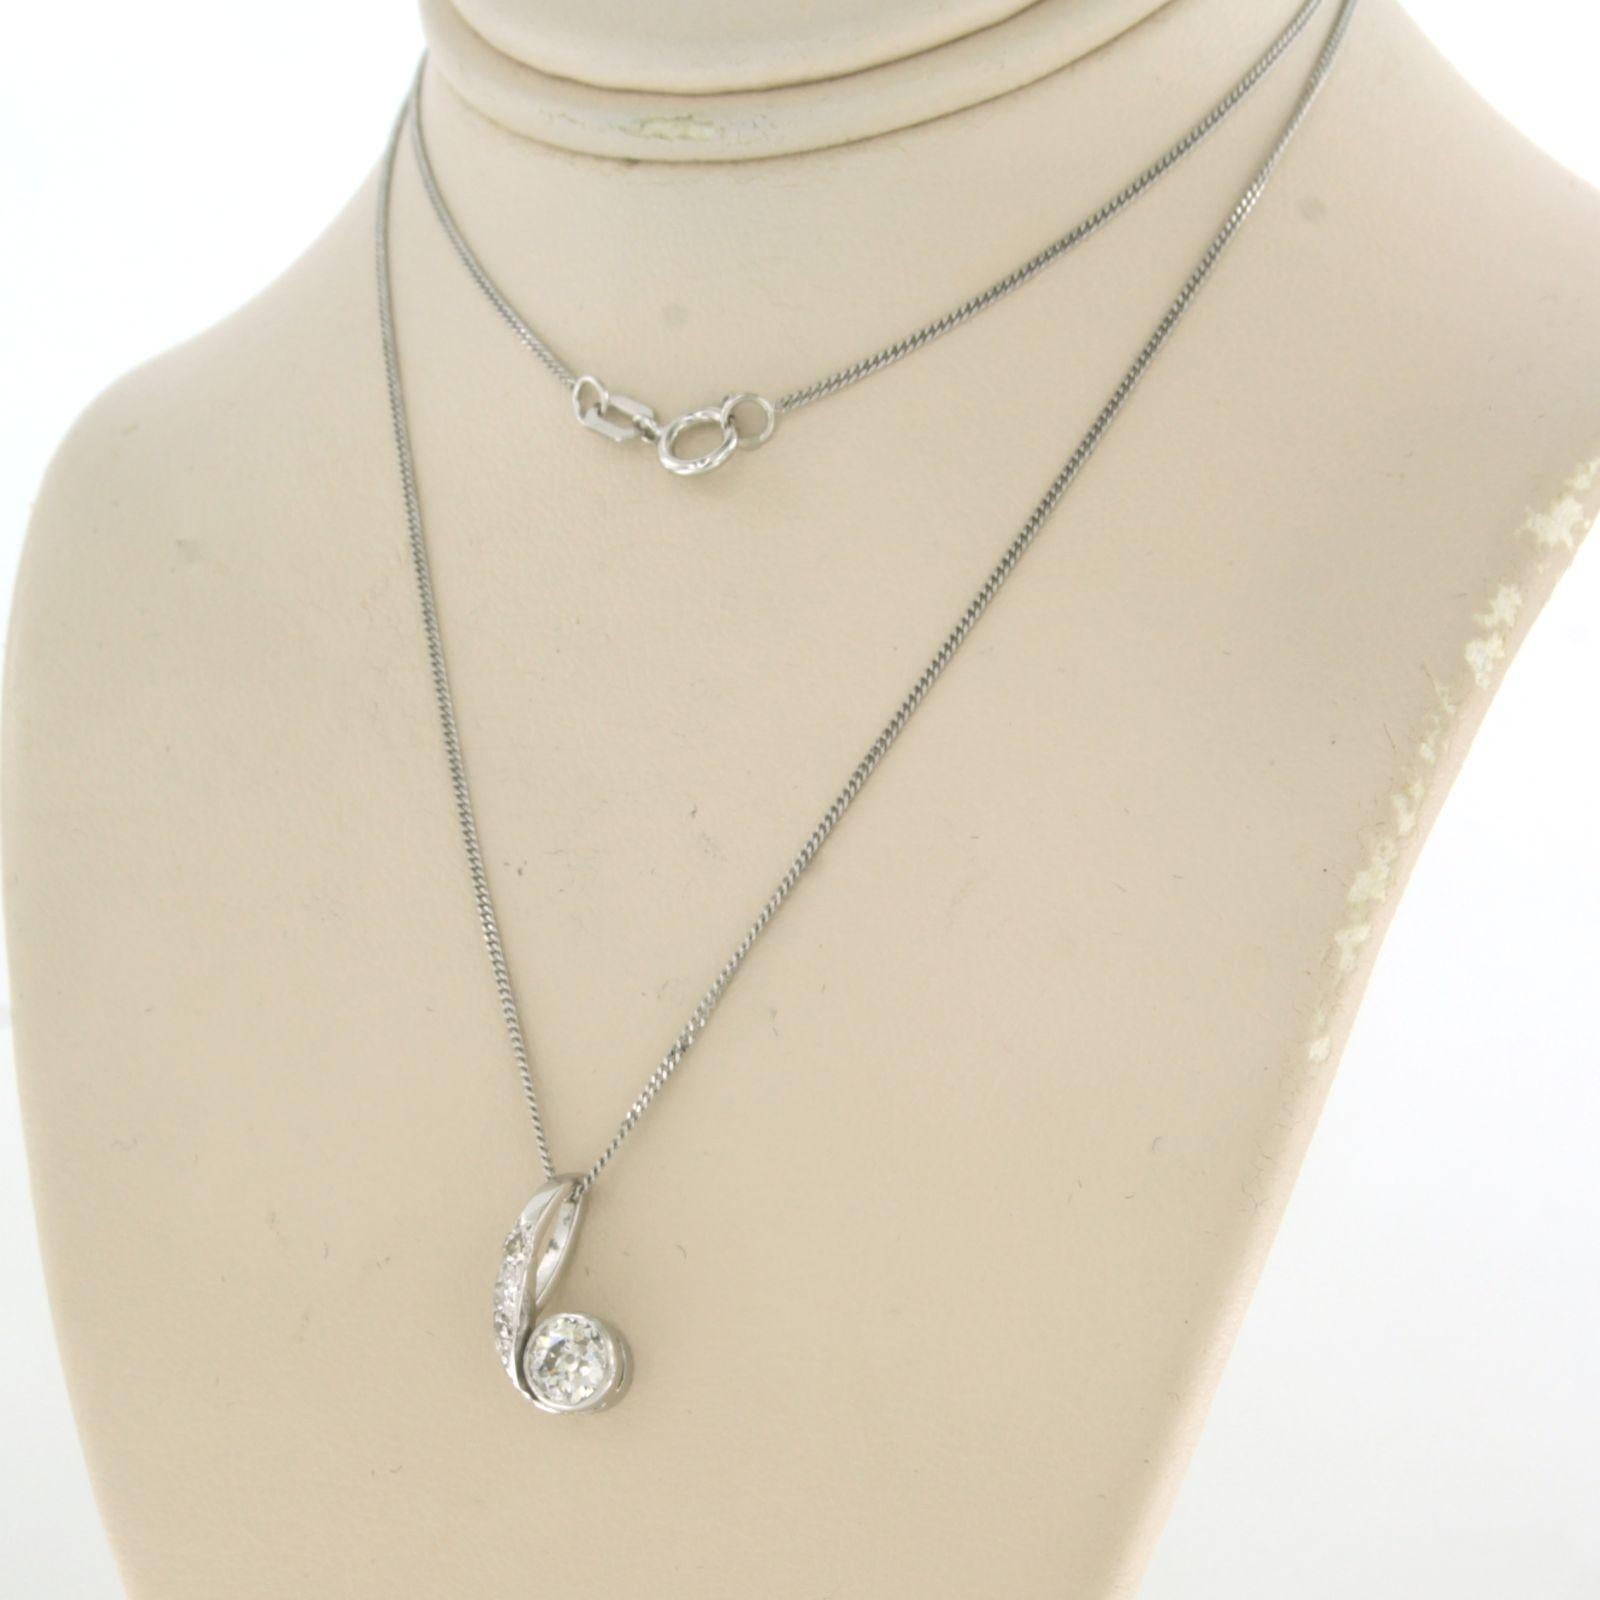 Art Nouveau Necklace with Art Nouvea pendant set with diamonds 14k white gold For Sale